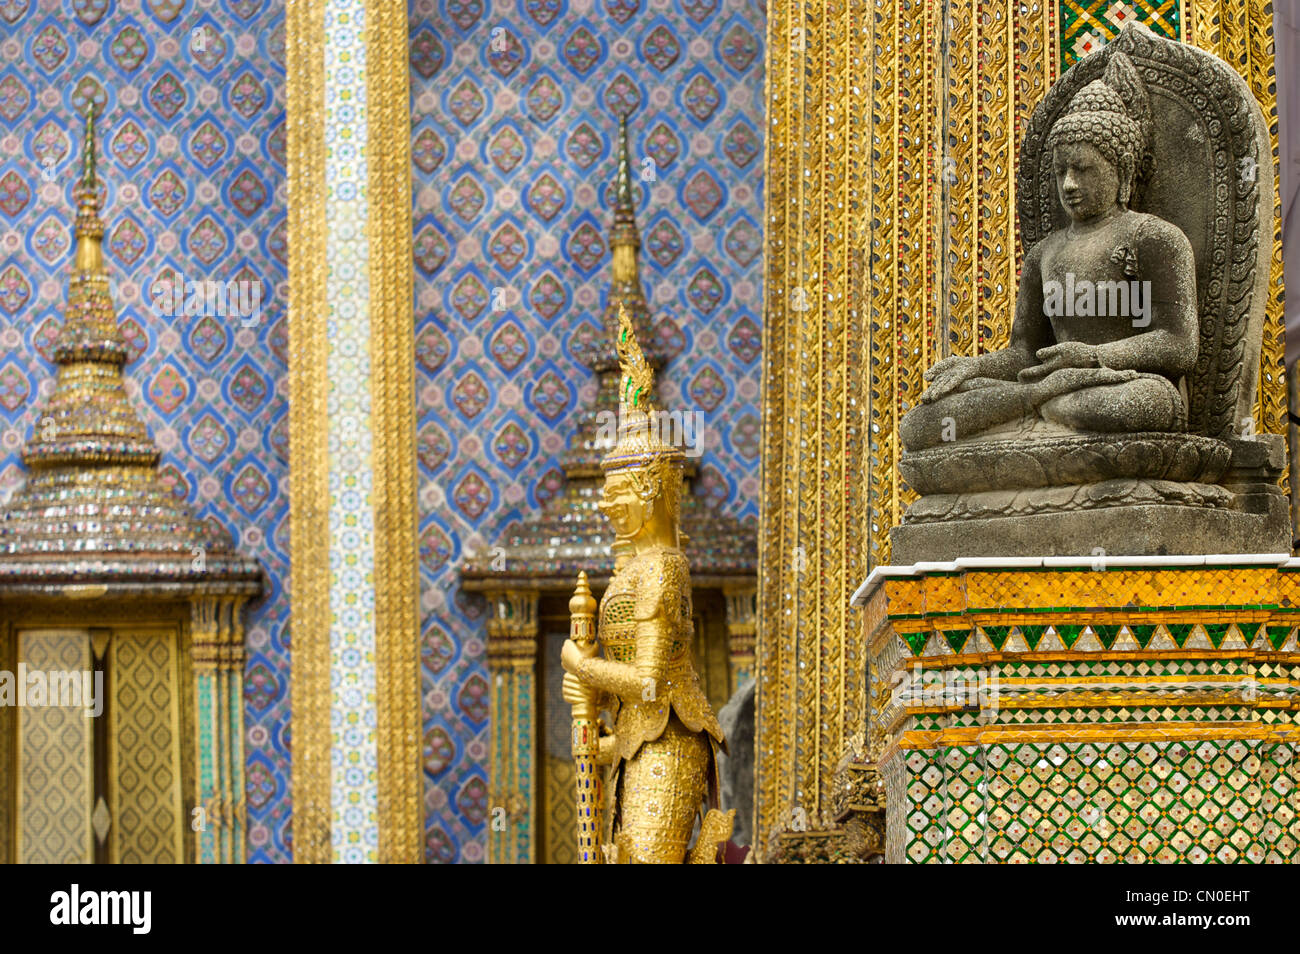 Spiegel, Mosaike, bemalte Fliesen, Dekorationen, Grand Palace, Wat Pra Keaw, Thai, Buddhismus, Religion, Bangkok, Thailand Stockfoto